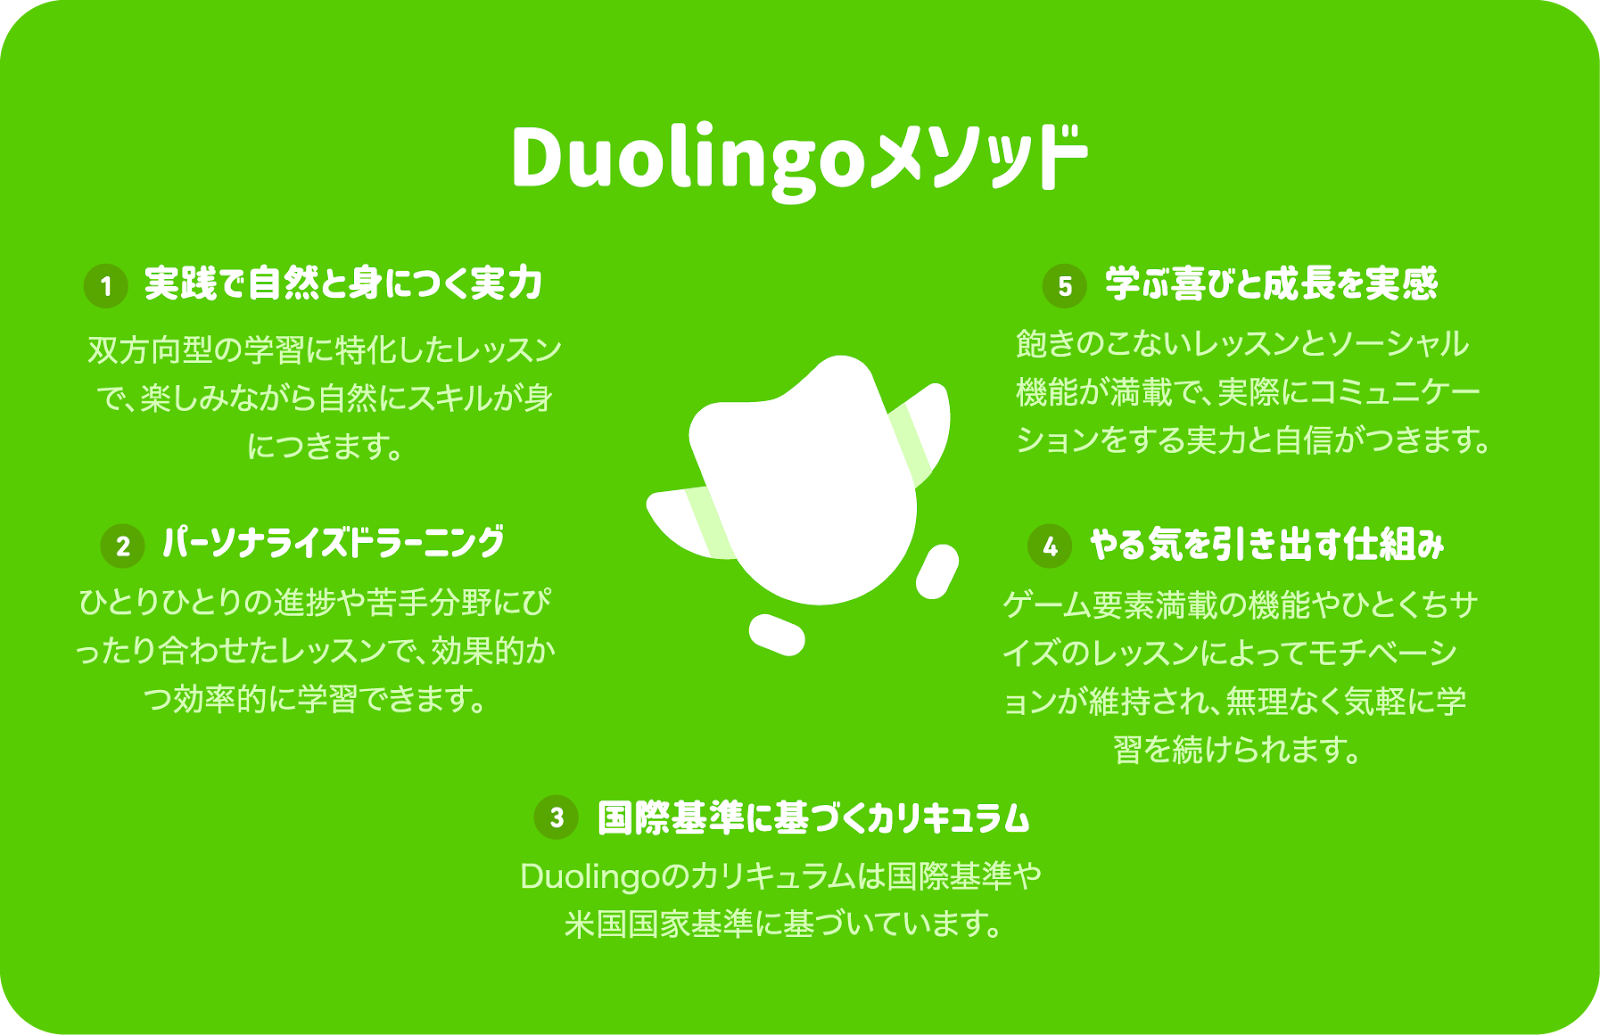 中央にDuoを配した形で、Duolingoメソッドの5つの原則がDuoの周りに記載されている。これら5つの原則を左上から反時計回りに説明。1. 実践で自然と身につく力：双方向型の学習に特化したレッスンで、楽しみながら自然にスキルが身につきます。2. パーソナライズドラーニング：ひとりひとりの進捗や苦手分野にぴったりと合わせたレッスンで、効果的かつ効率的に学習できます。3. 国際基準に基づくカリキュラム：Duolingoのカリキュラムは国際基準や米国国家基準に基づいています。4. やる気を引き出す仕組み：ゲーム要素満載の機能やひとくちサイズのレッスンによってモチベーションが維持され、無理なく気軽に学習を続けられます。5. 学ぶ喜びと成長を実感：飽きのこないレッスンとソーシャル機能が満載で、実際にコミュニケーションをする実力と自信がつきます。